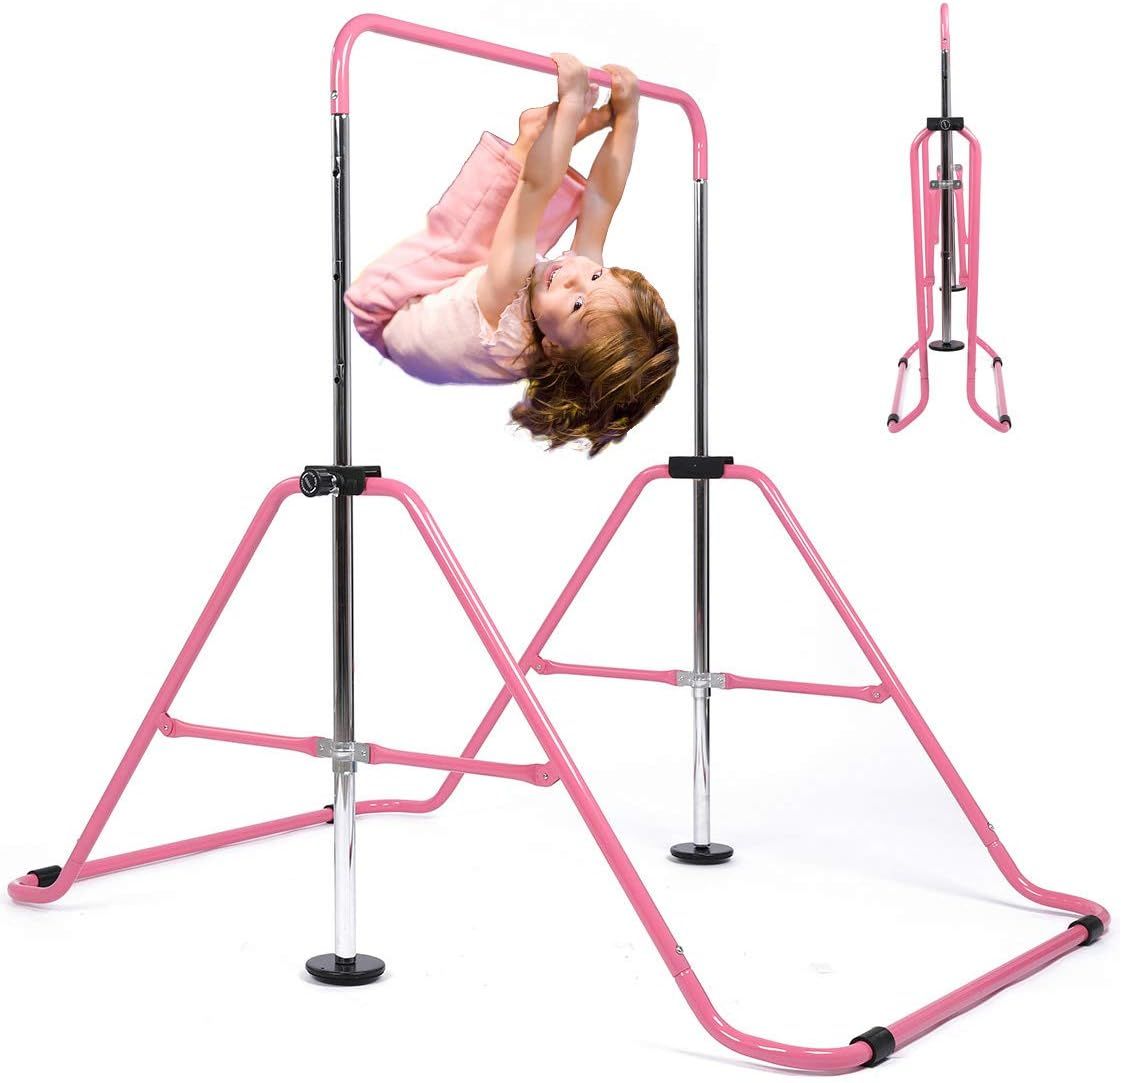 My Quality Life Gymnastics Bar Kids Expandable Gymnastic Bars Equipment for Home Adjustable Heigh... | Amazon (US)